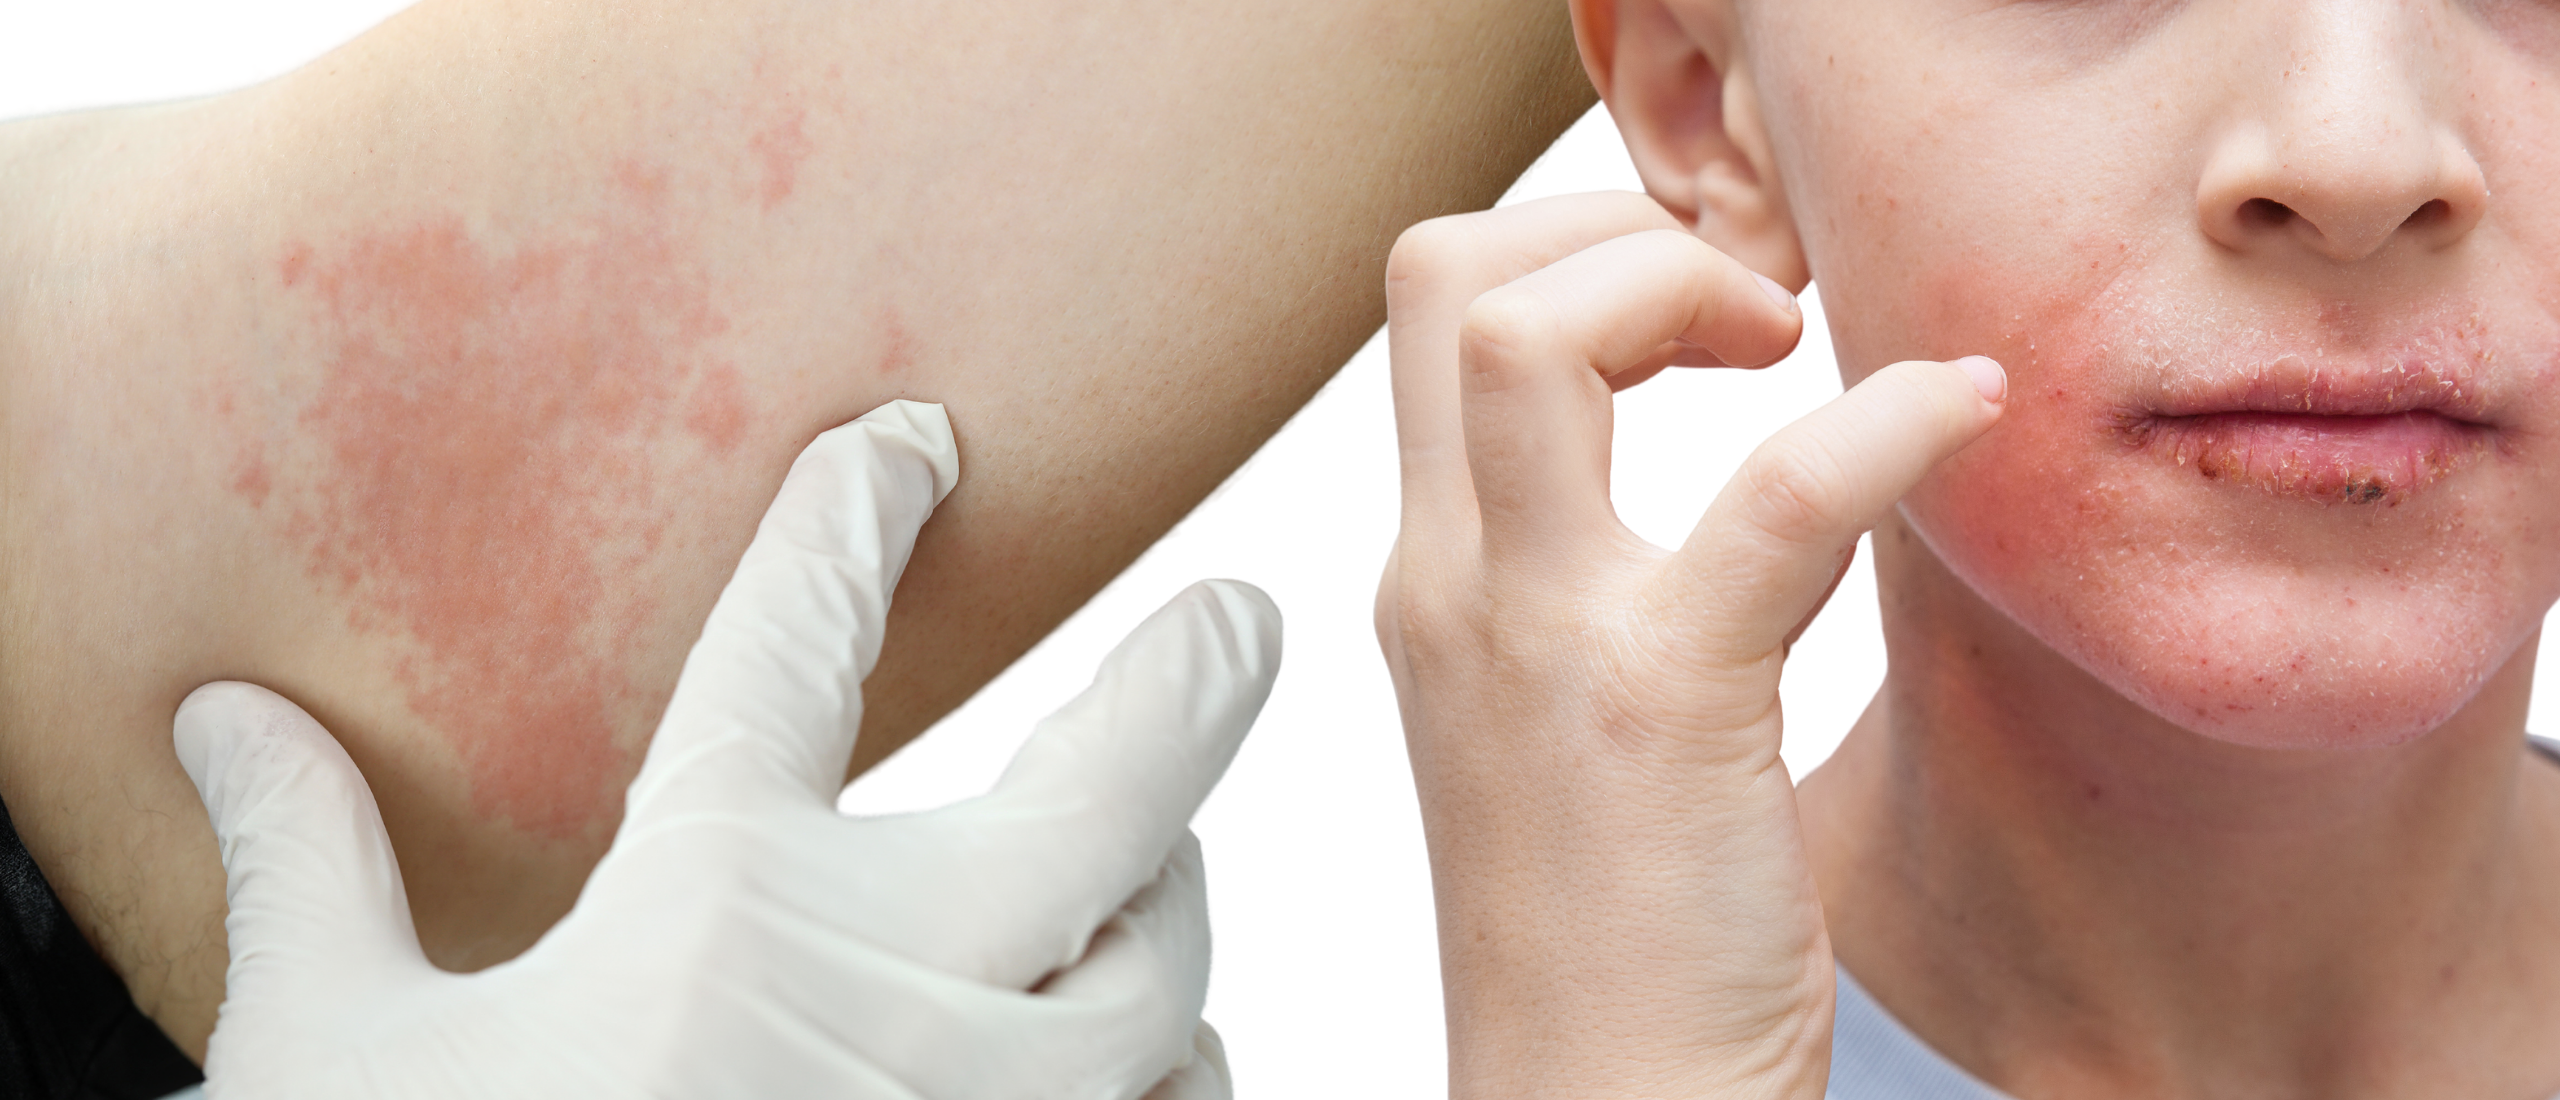 Huid allergieën: rode, gezwollen, jeukende huid